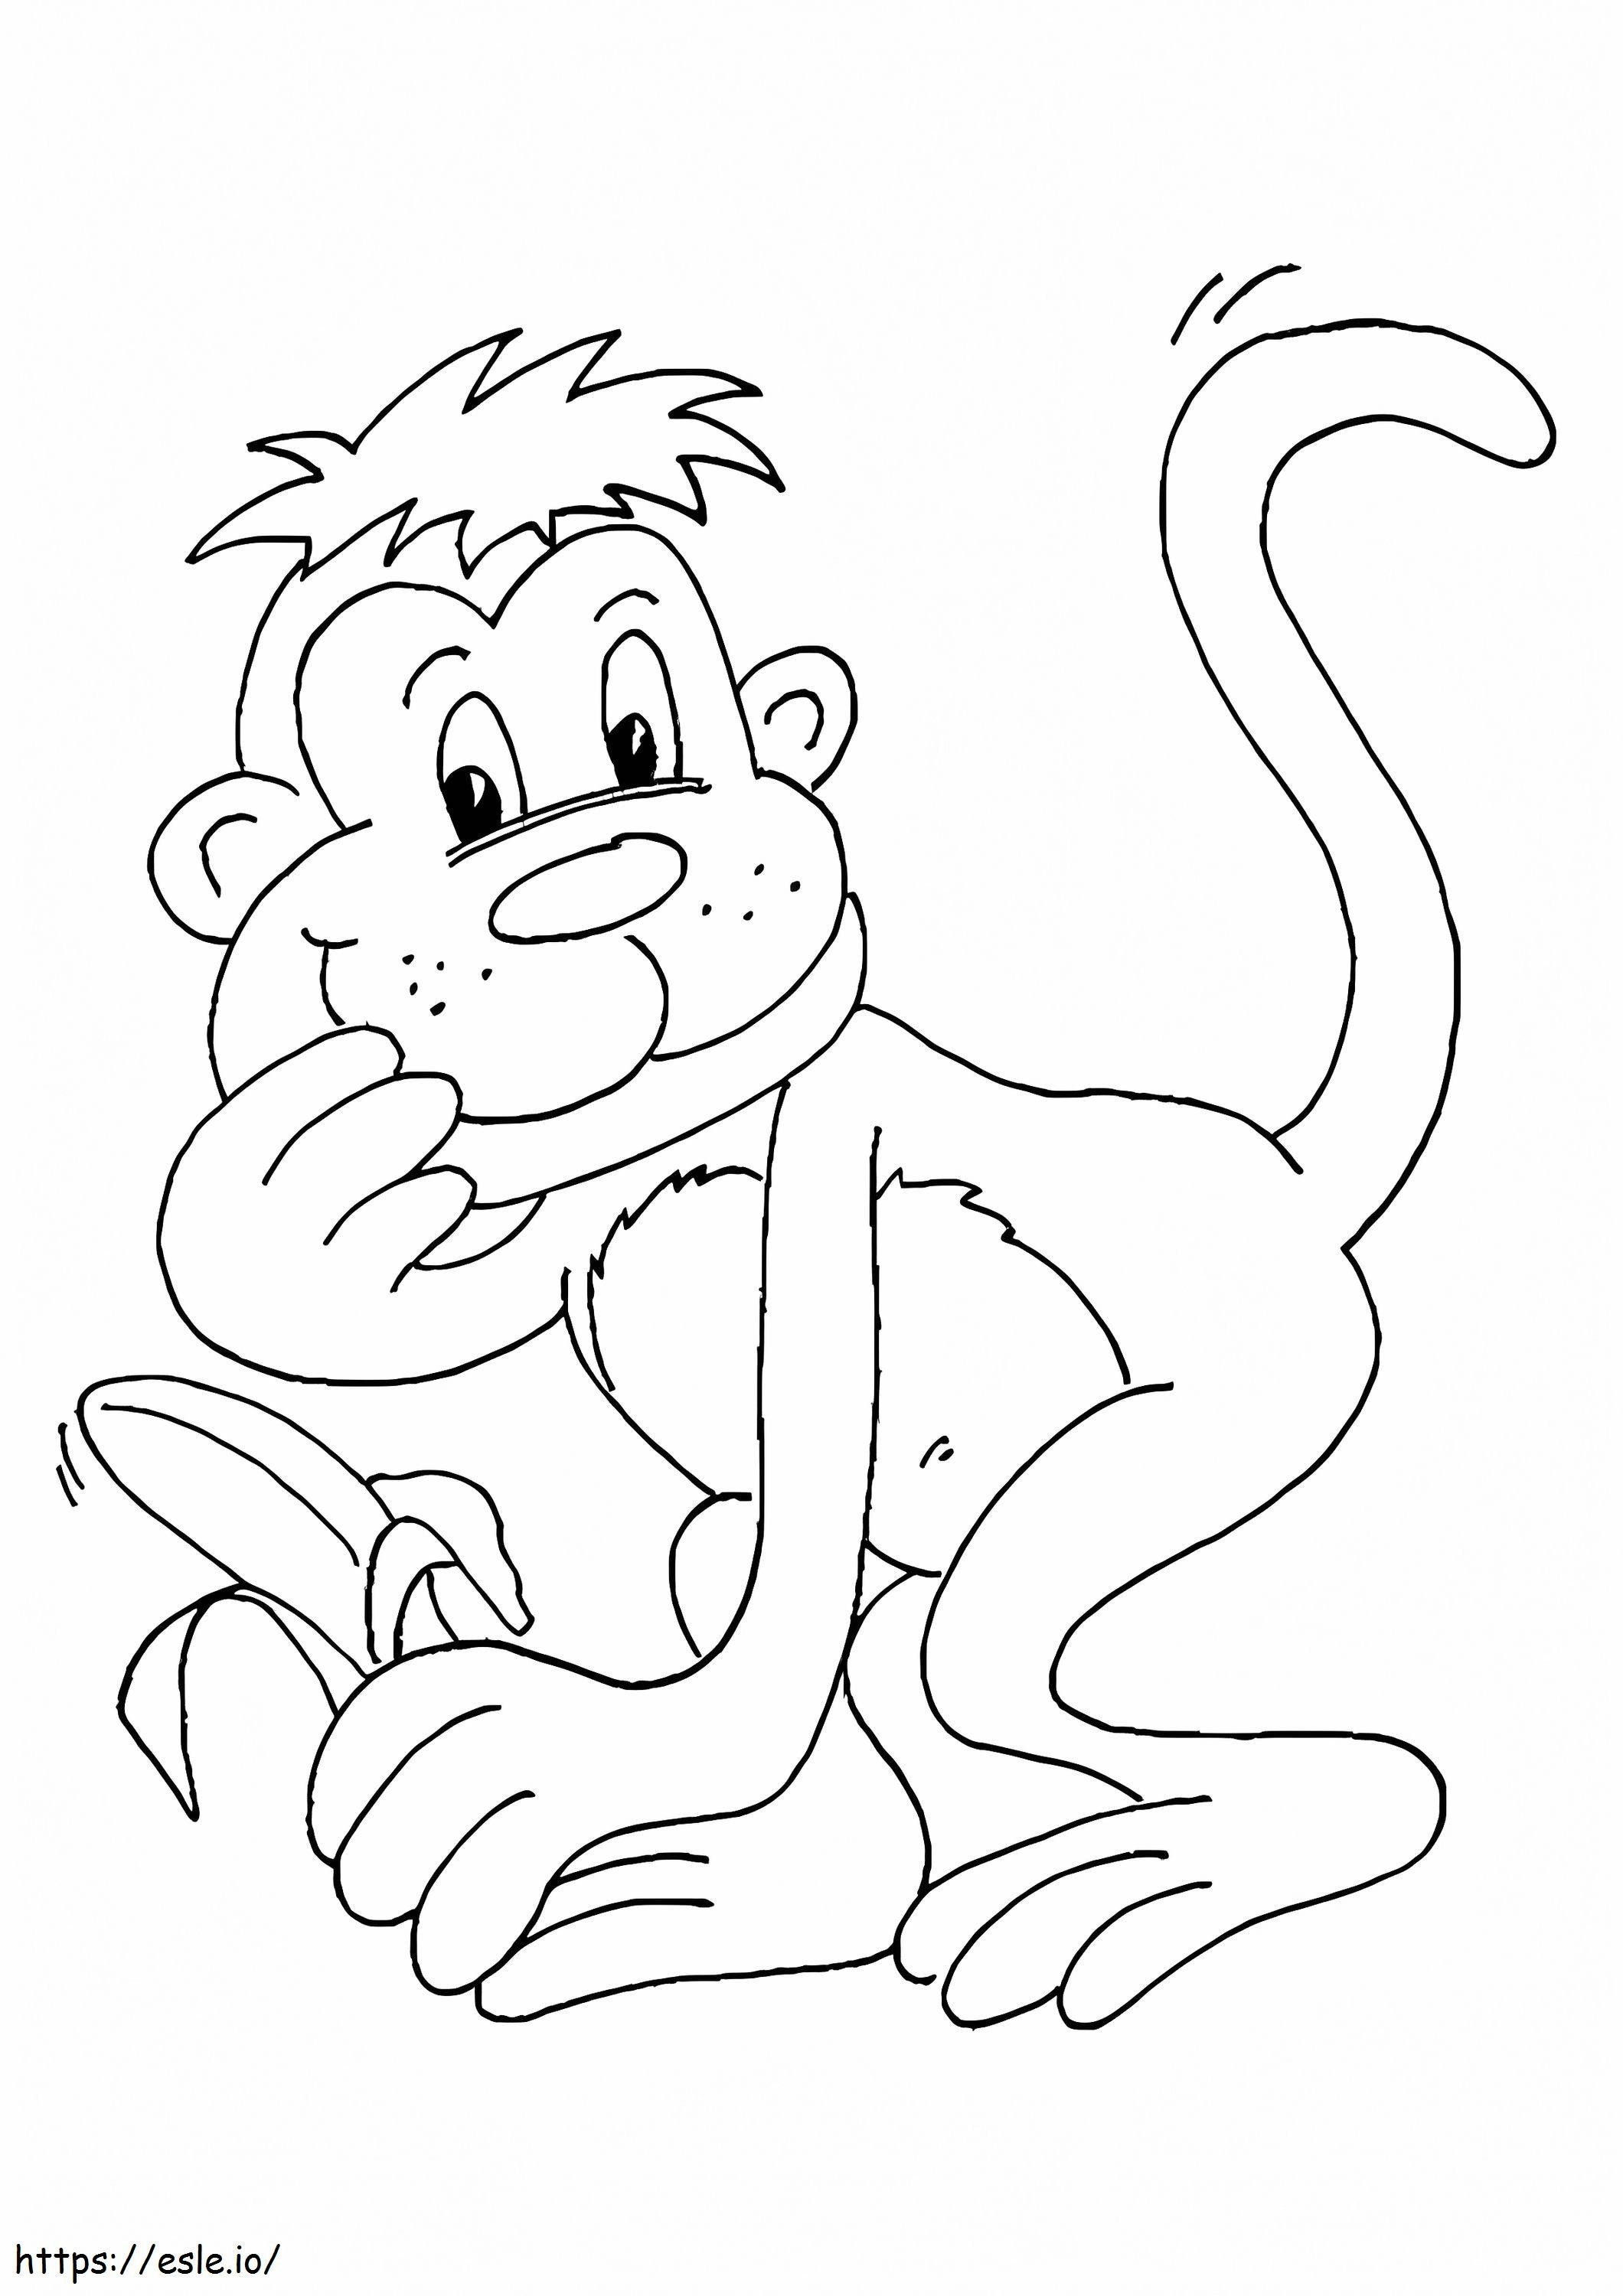 Macaco segurando uma banana para colorir